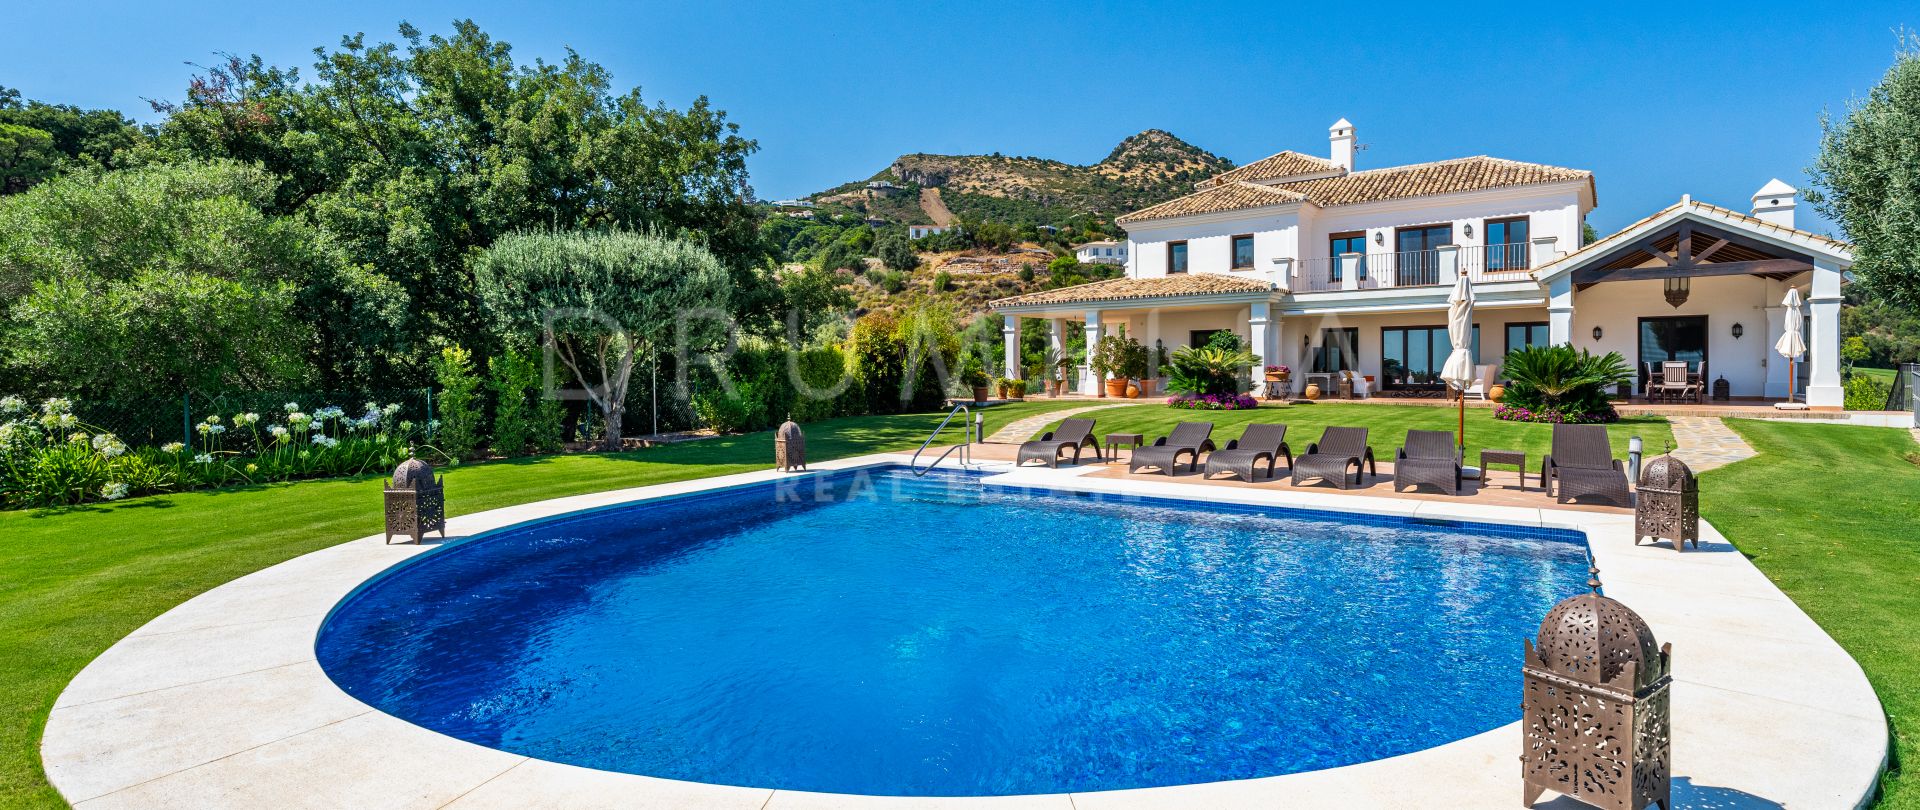 Schitterende luxe villa direct aan de golfbaan, Marbella Club Resort, Benahavis